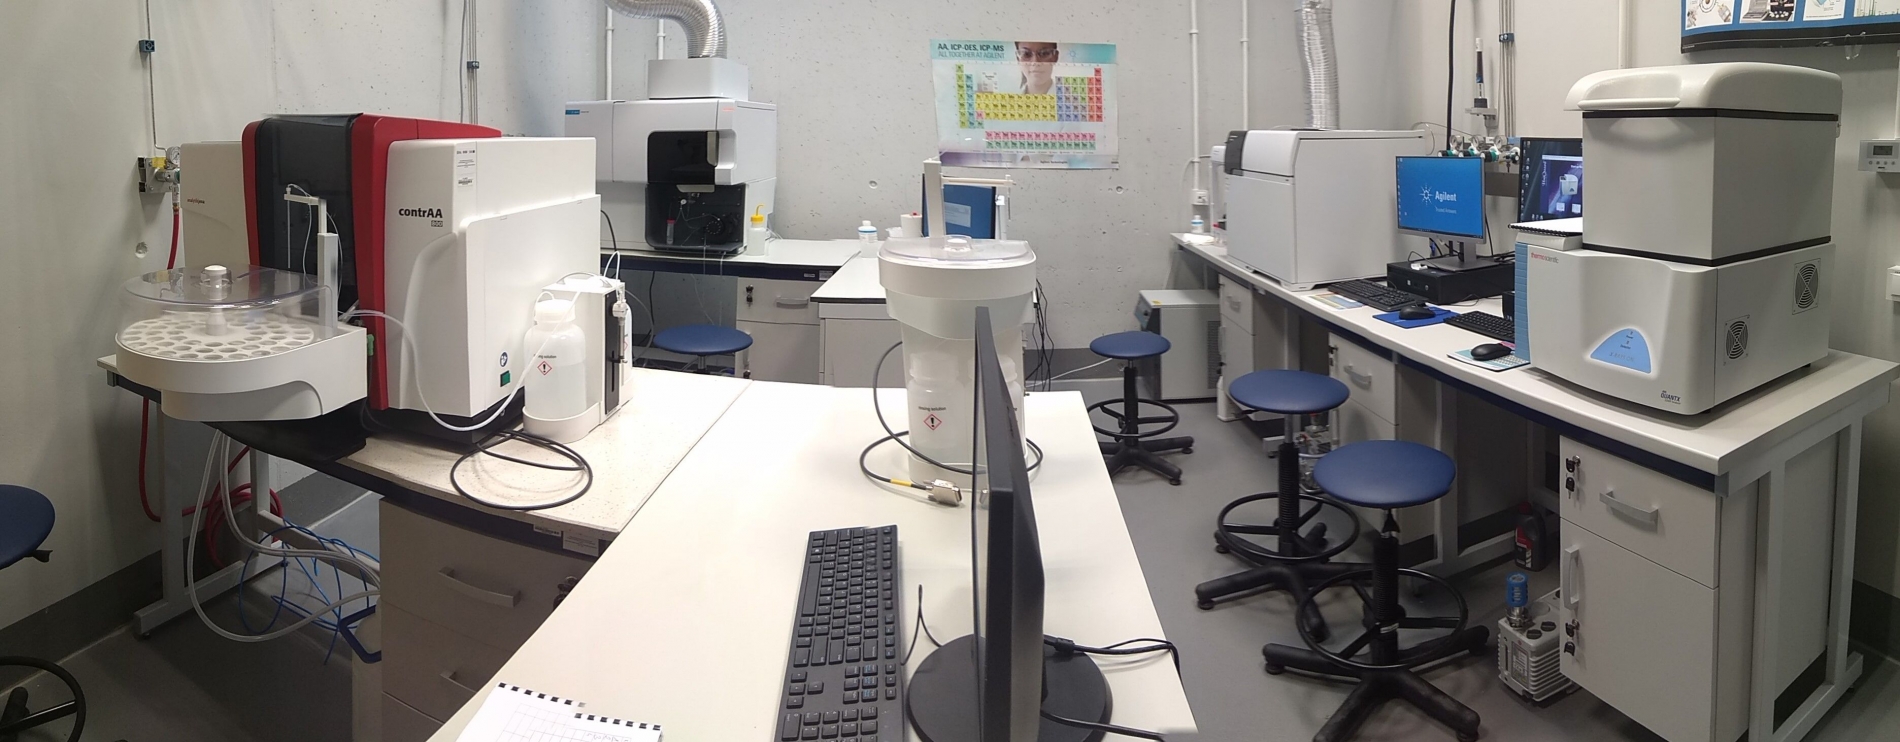 Laboratorium Laboratorium_hydro_geo1